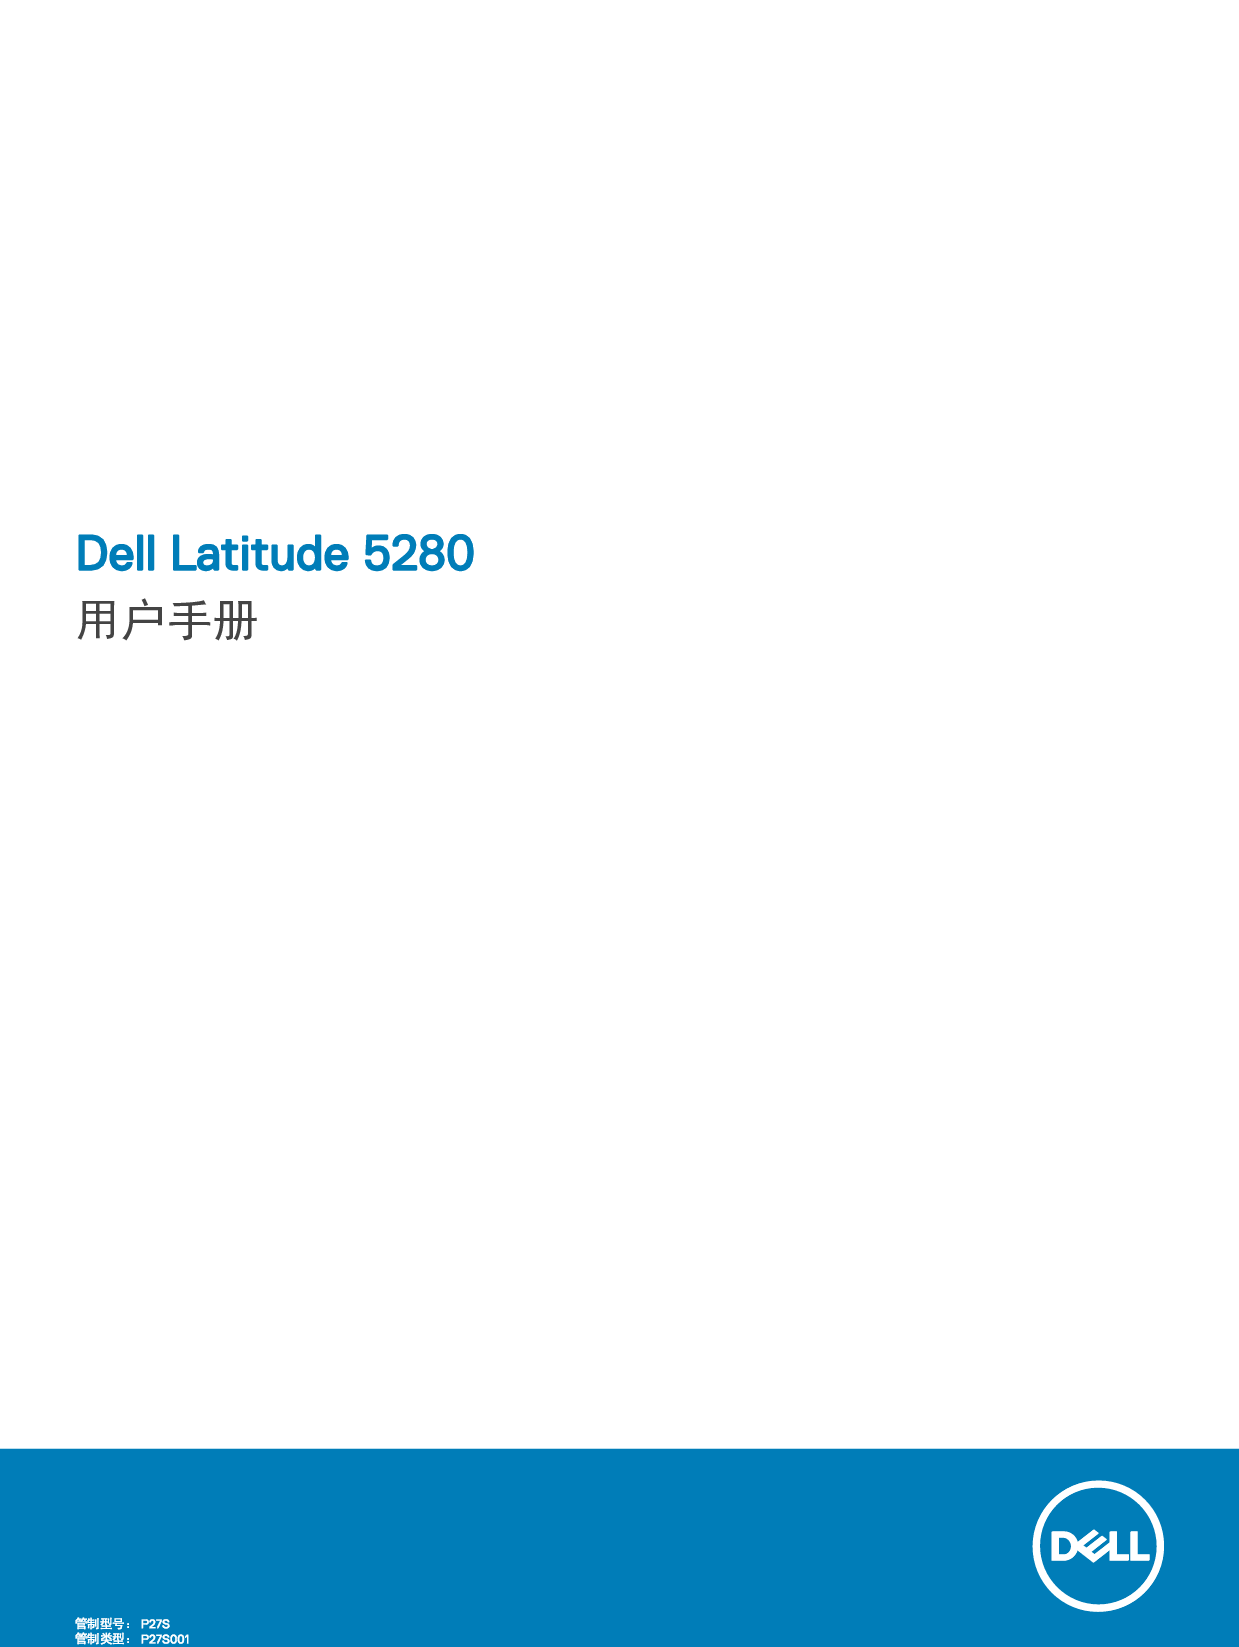 戴尔 Dell Latitude 5280 用户手册 封面